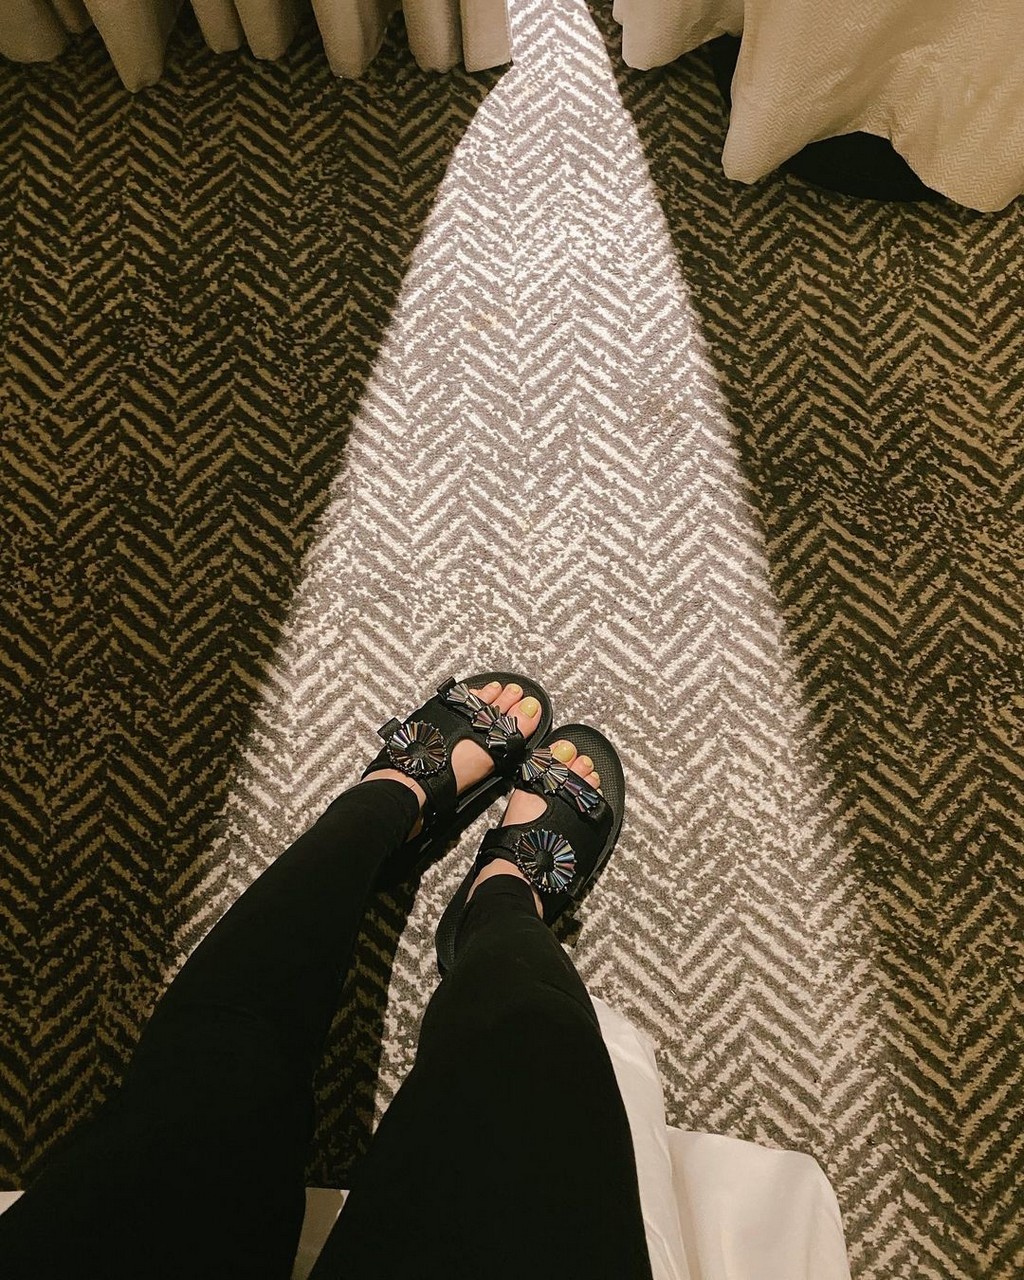 Marsha Aruan Feet